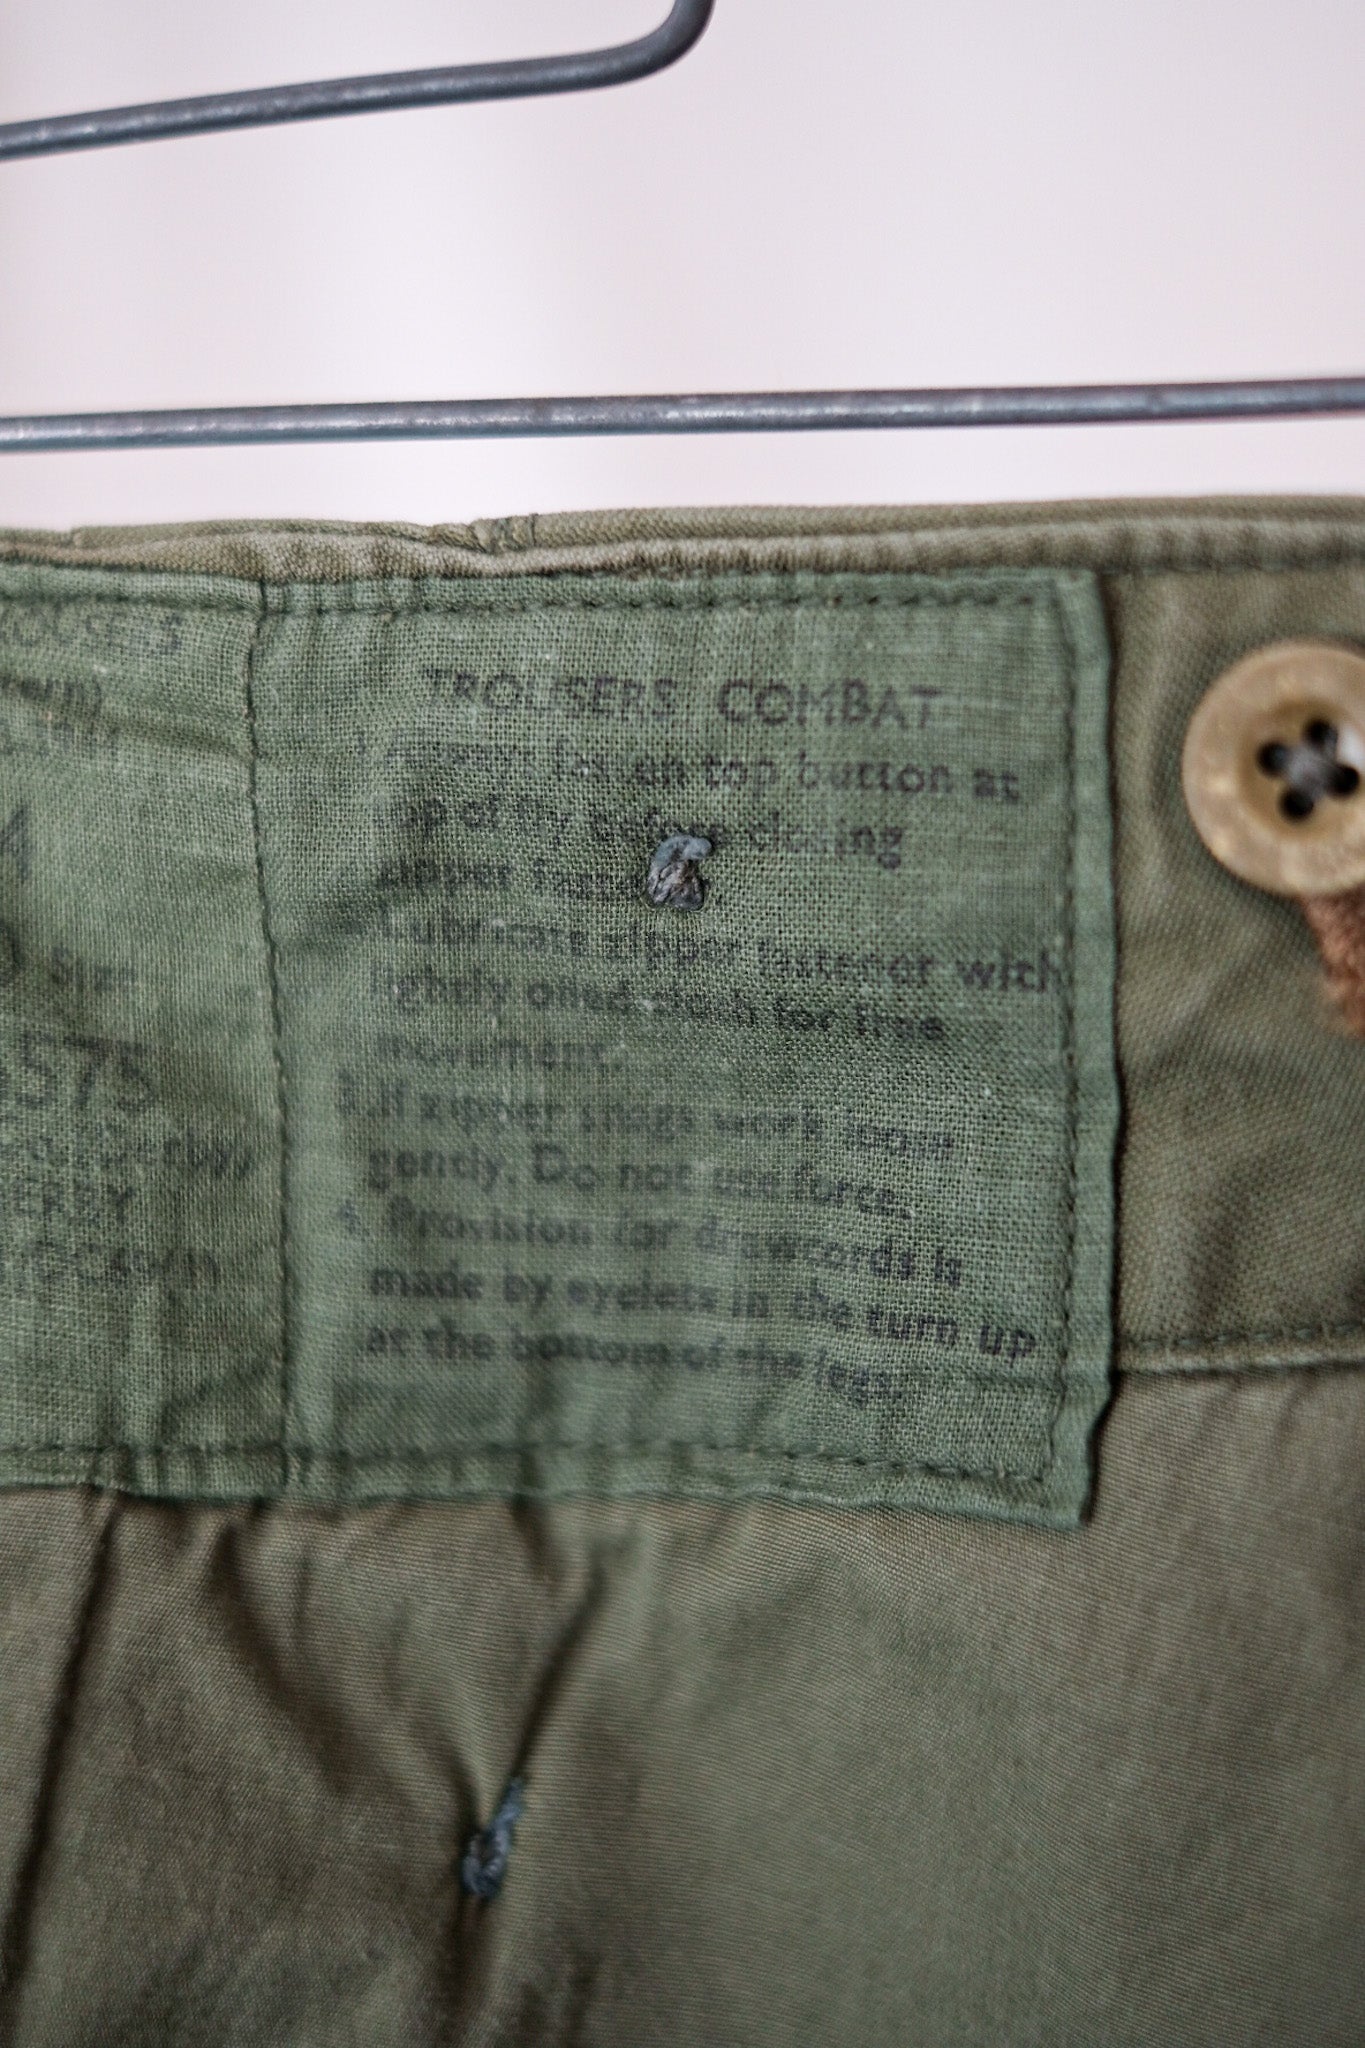 [〜60年代]英軍1960年的模式戰鬥長褲